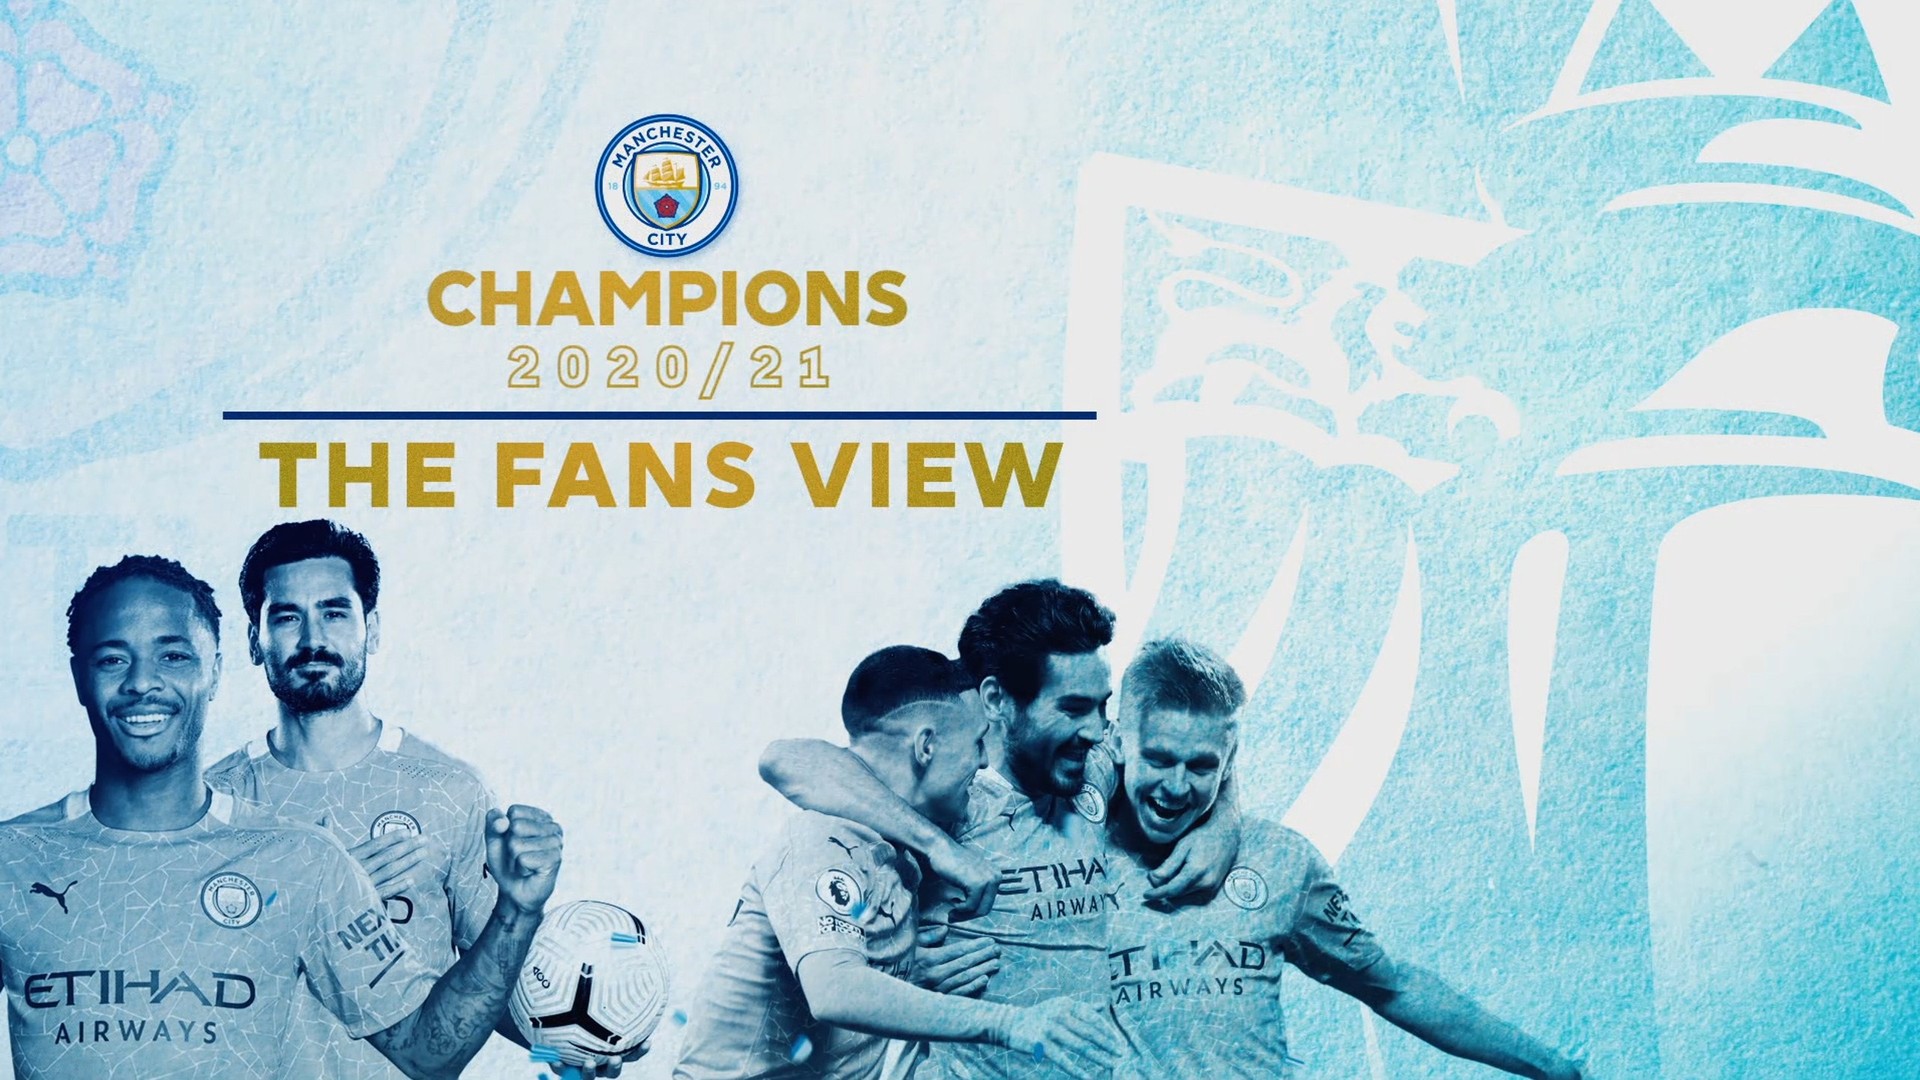 Manchester City Premier League Champions 2021 Wallpaper